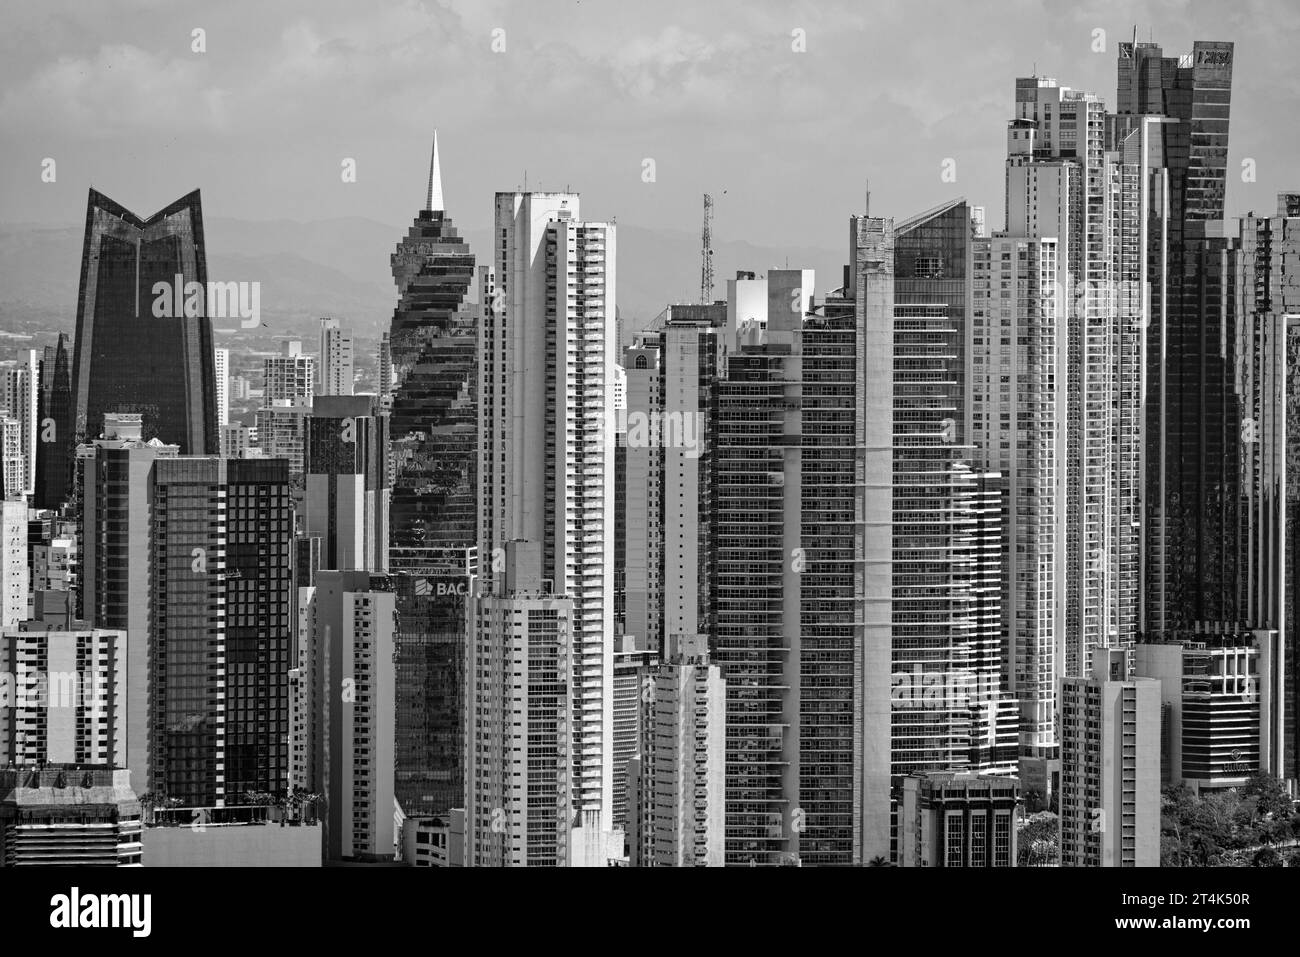 Eine monochromatische Skyline, die die architektonische Vielfalt und Dichte eines lebendigen Stadtbildes erfasst. Stockfoto